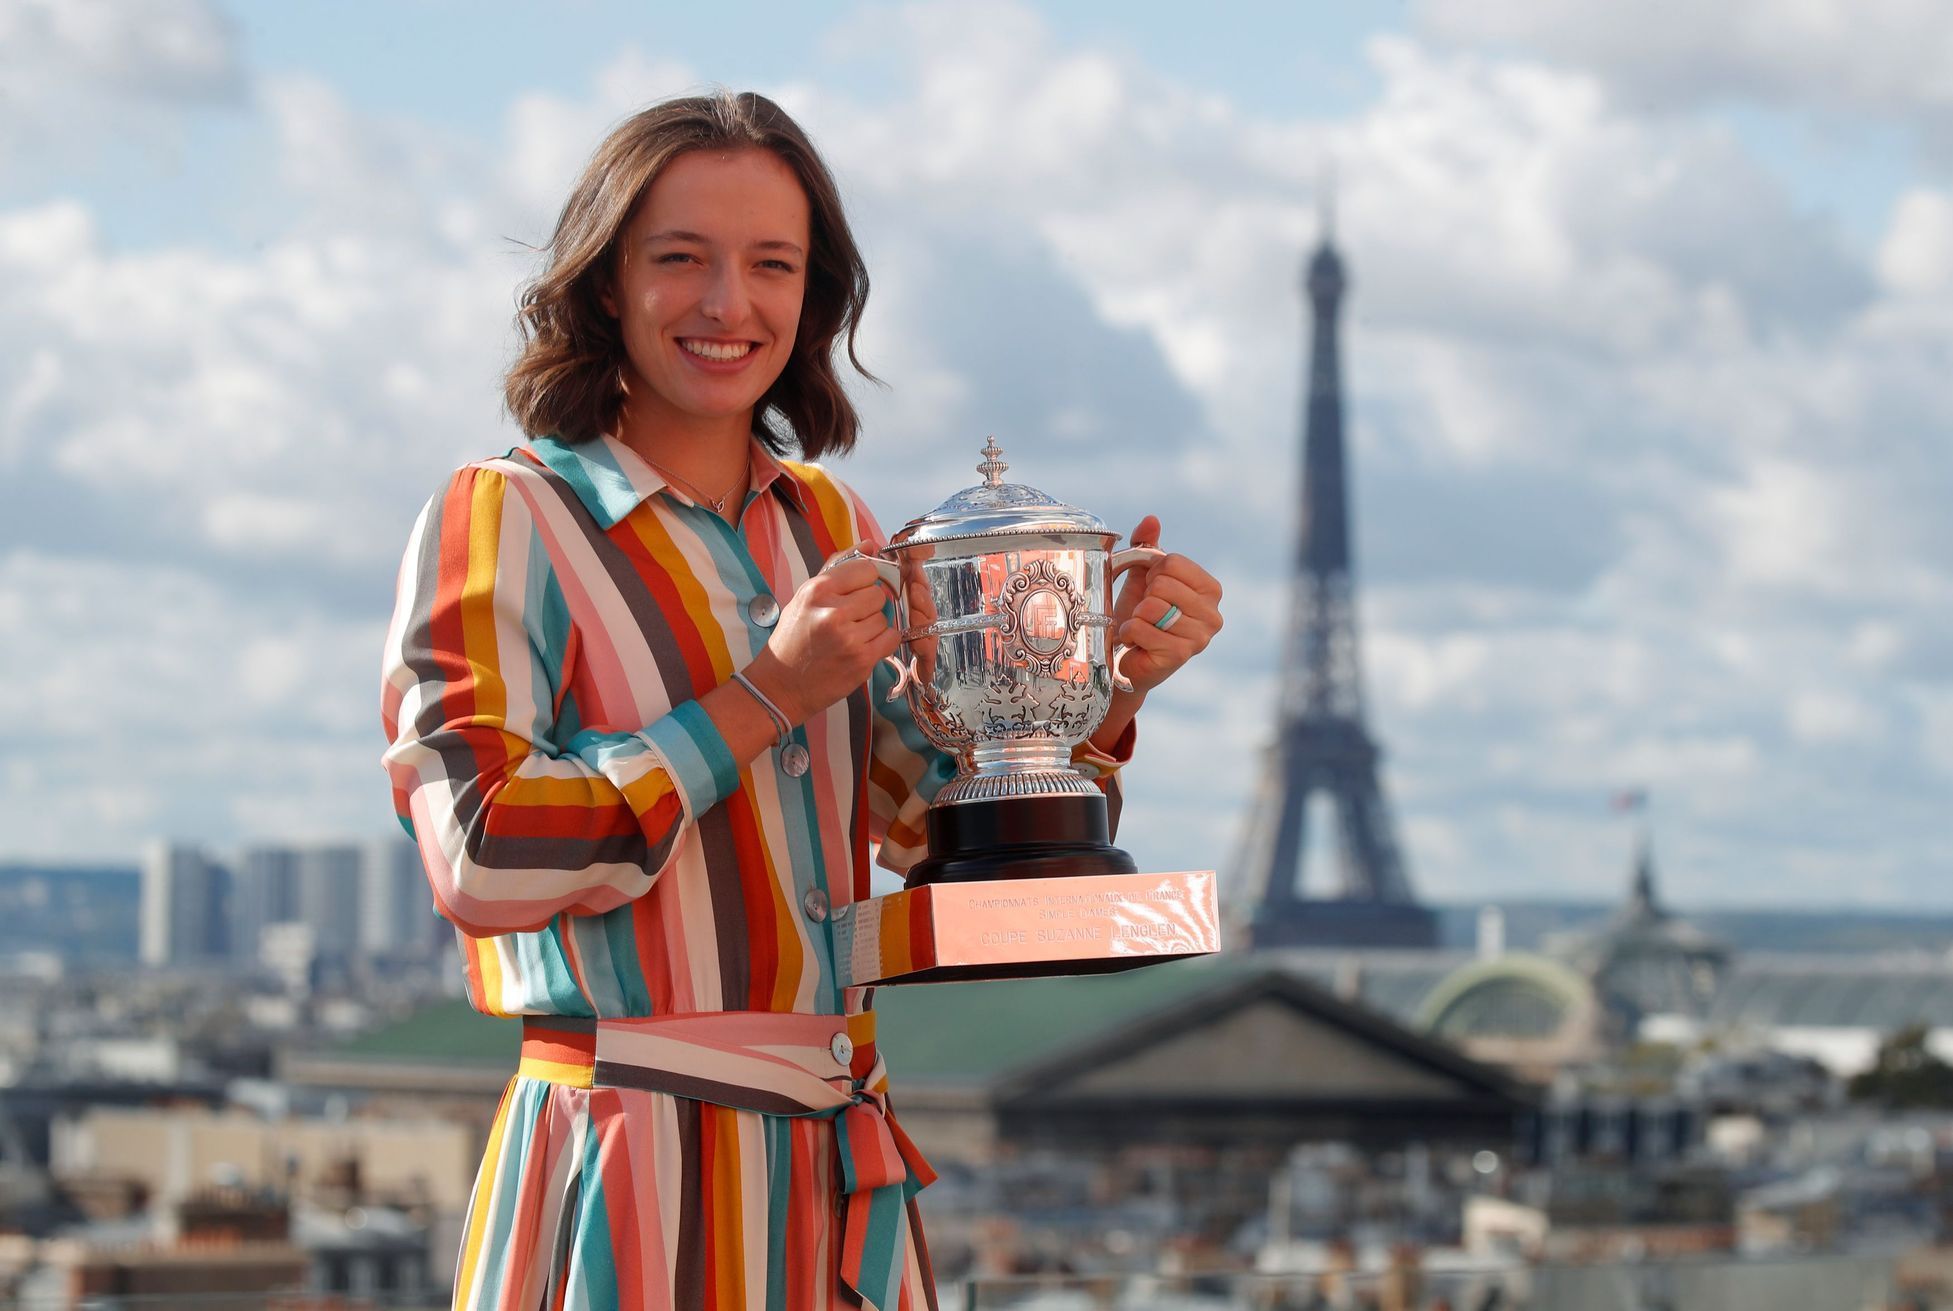 Iga Šwiateková, French Open